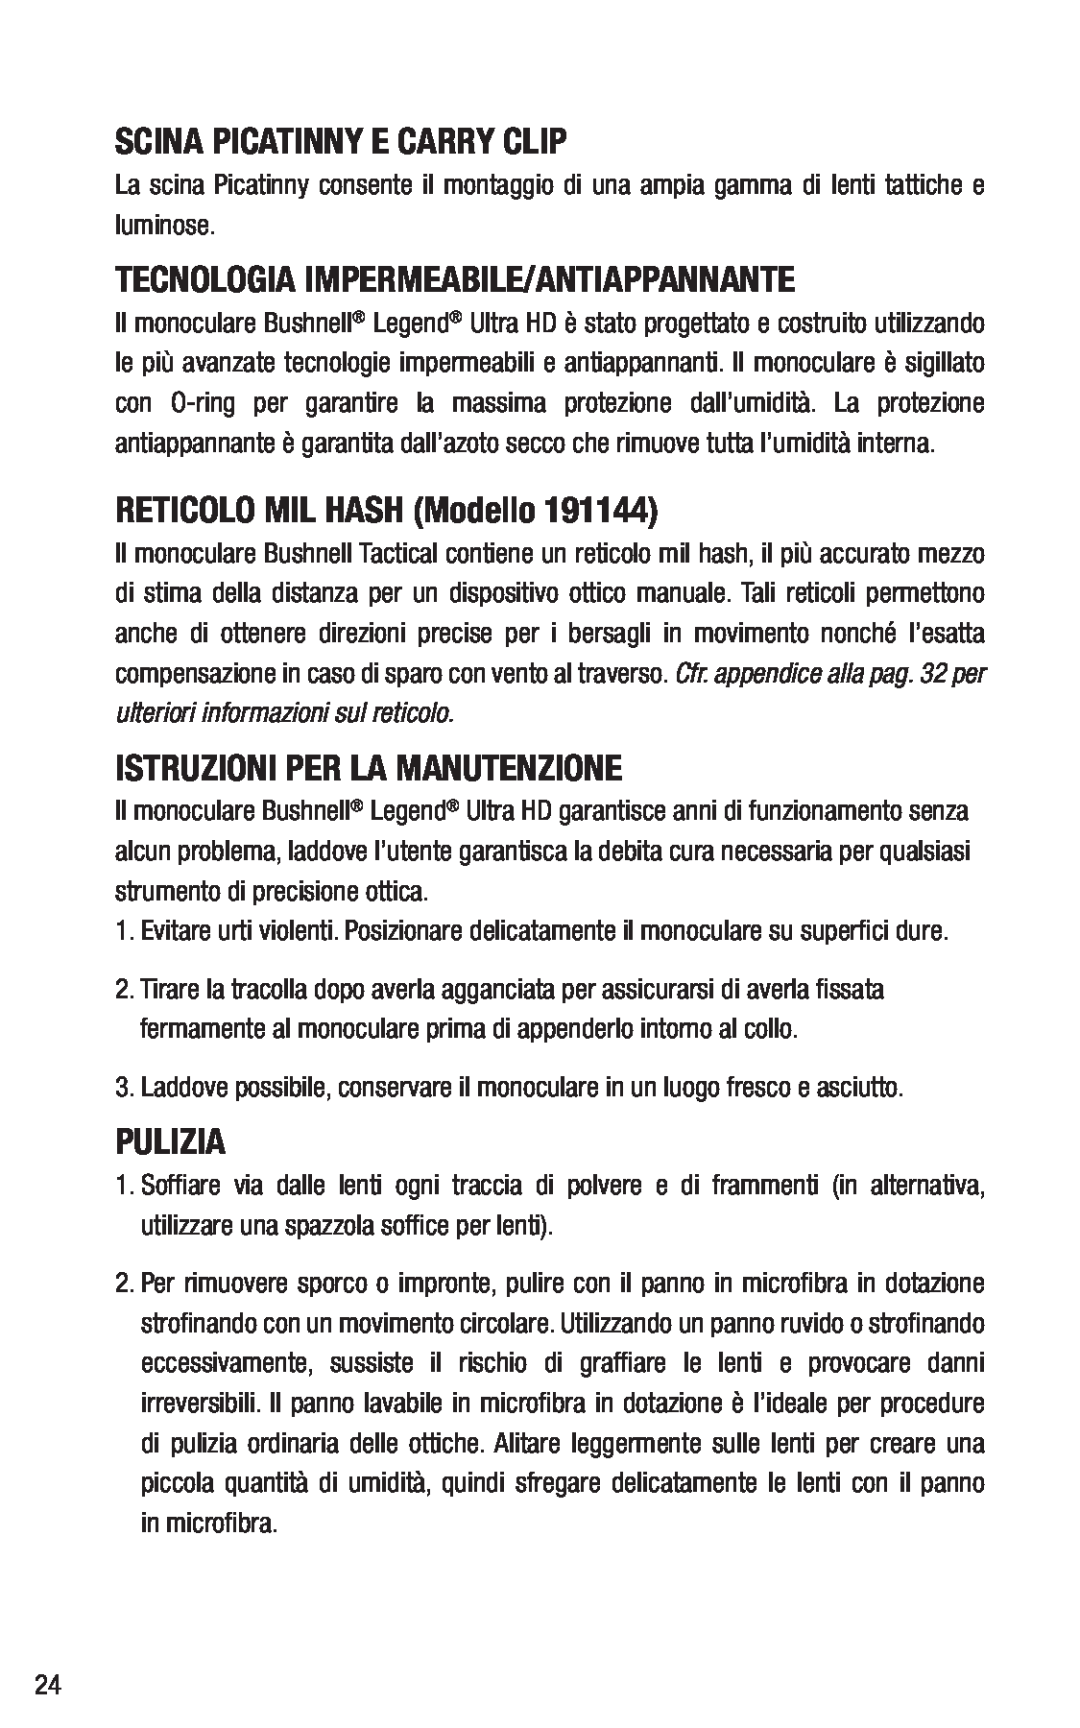 Bushnell 191144 Scina Picatinny E Carry Clip, Tecnologia Impermeabile/Antiappannante, RETICOLO MIL HASH Modello, Pulizia 